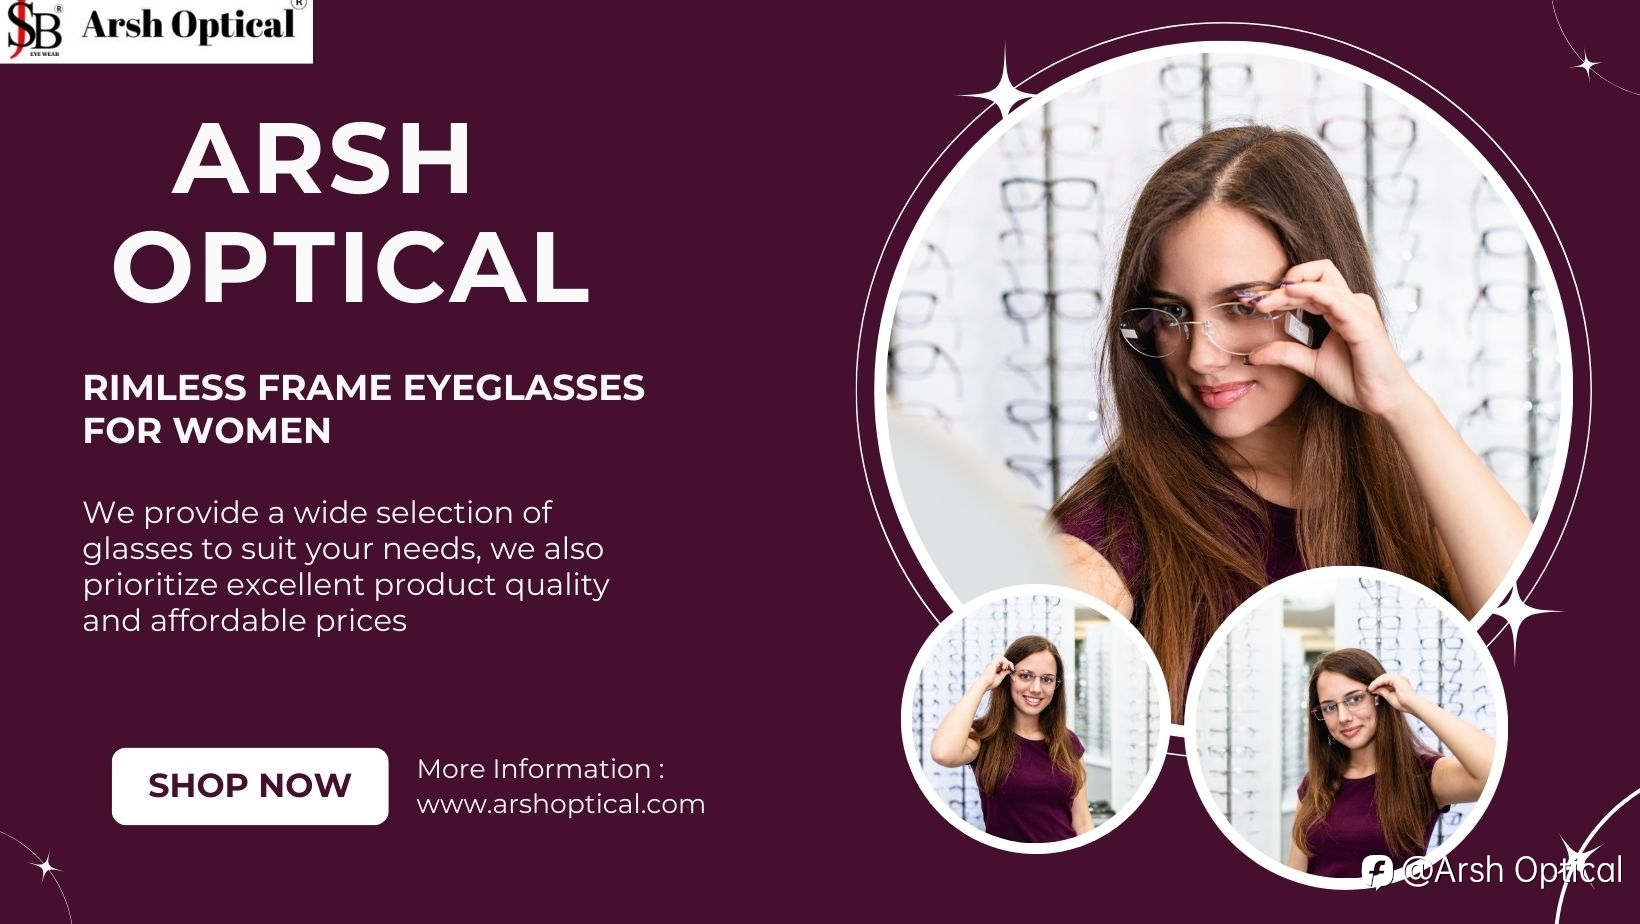 Lightweight Rimless Frame Eyeglasses for Women